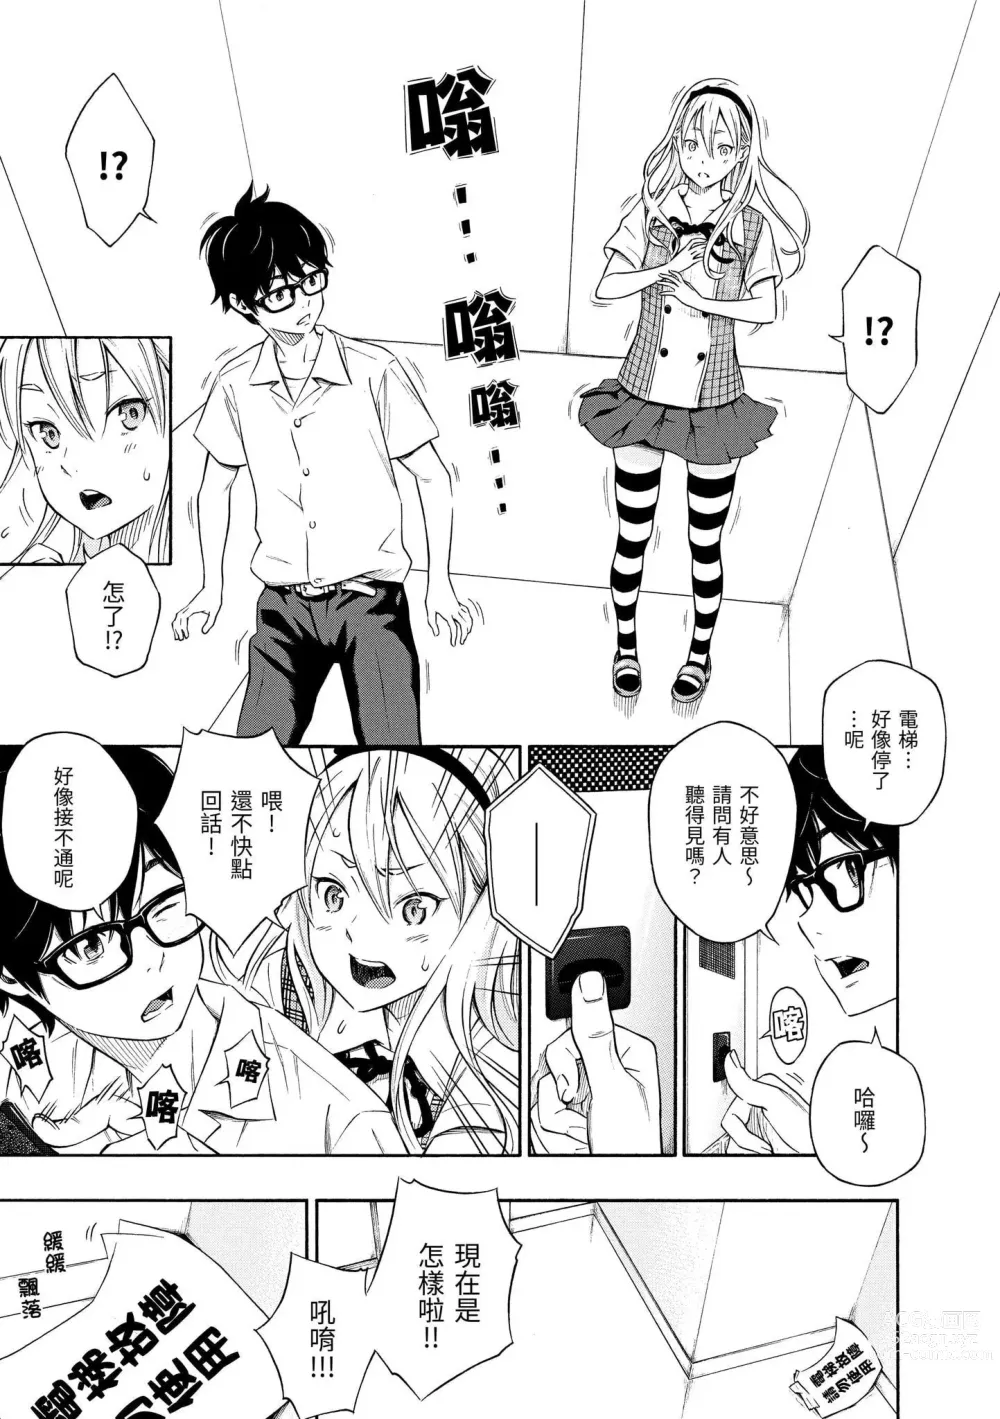 Page 10 of manga 放學後的香草女孩 (decensored)